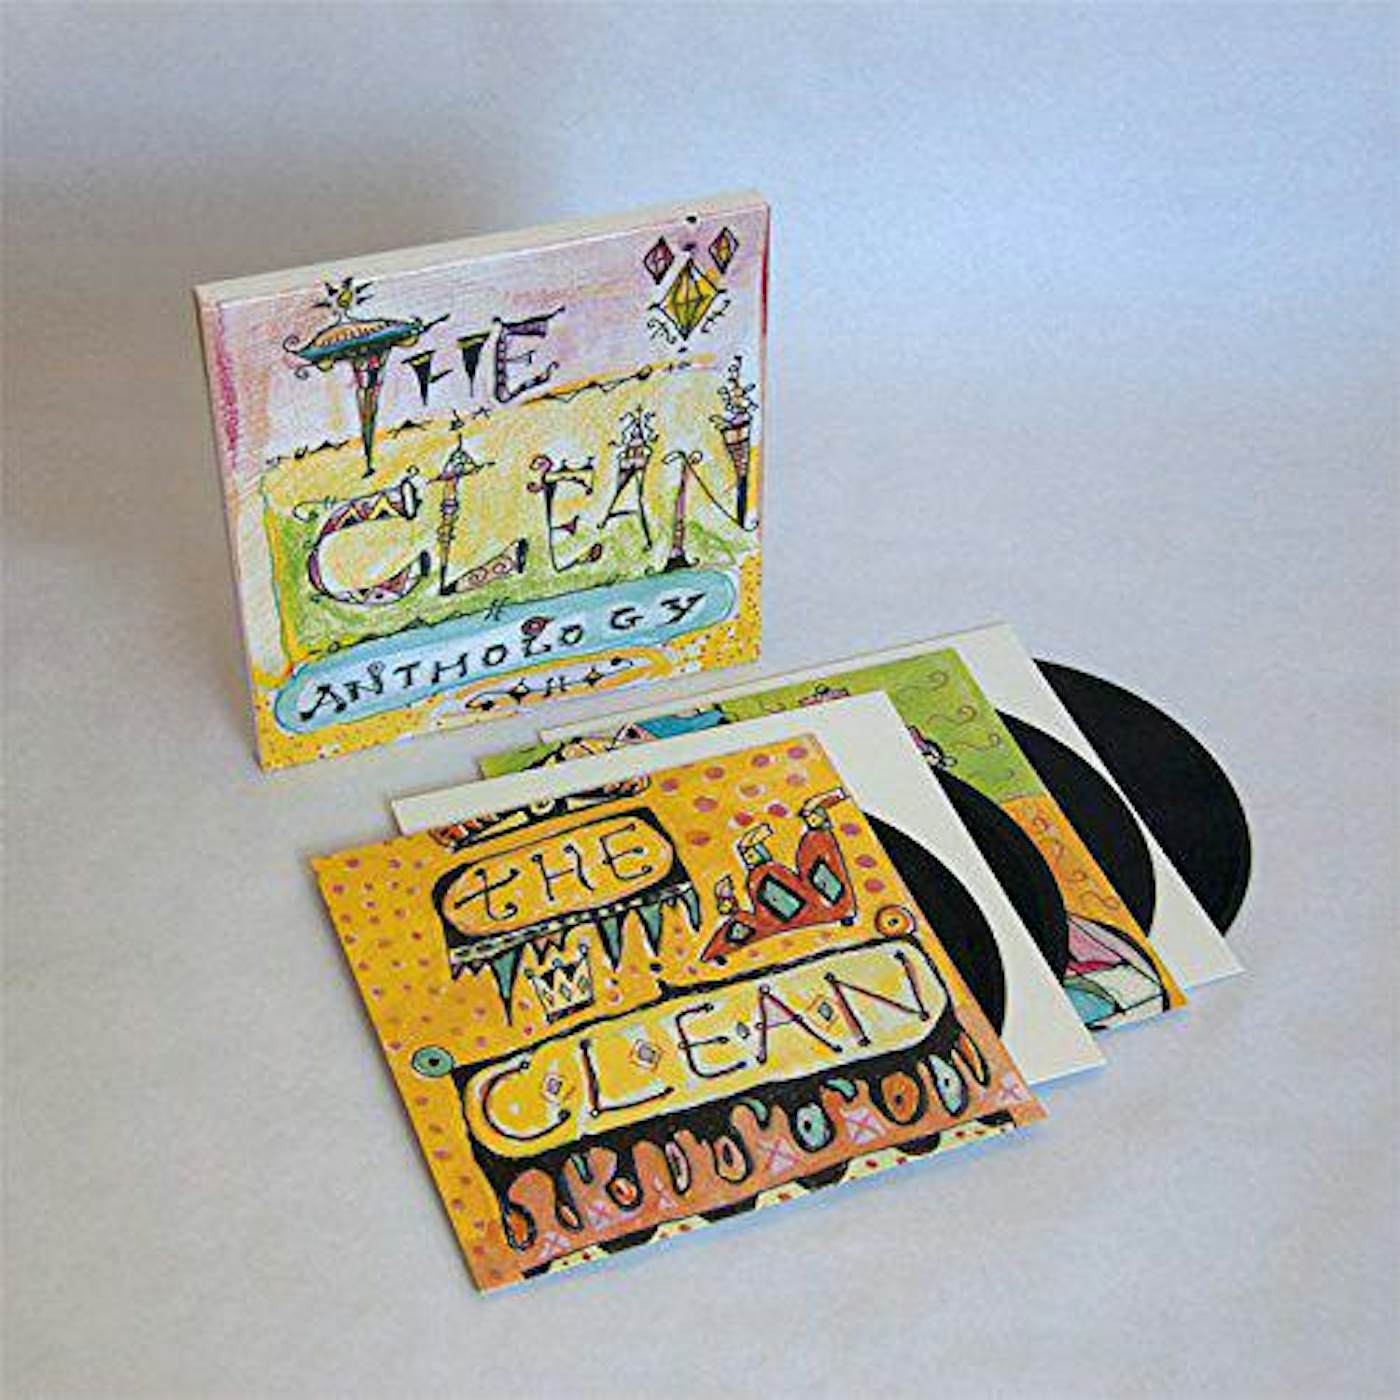 Clean Anthology (4LP) Box Set (Vinyl)